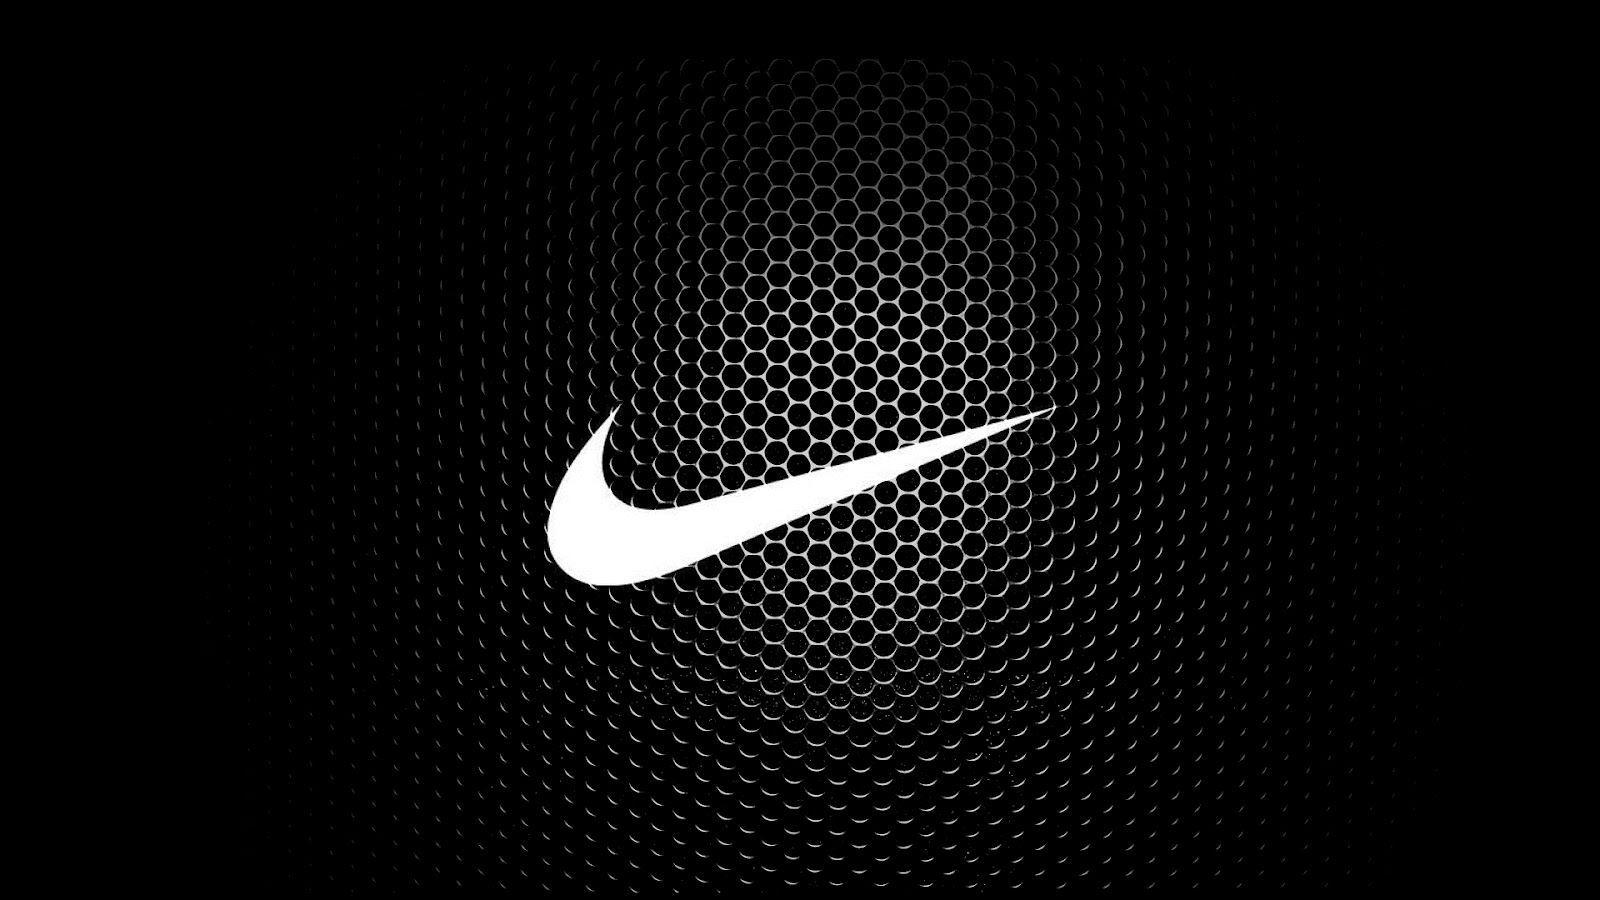 Nike 1080P, 2K, 4K, 5K HD wallpapers free download